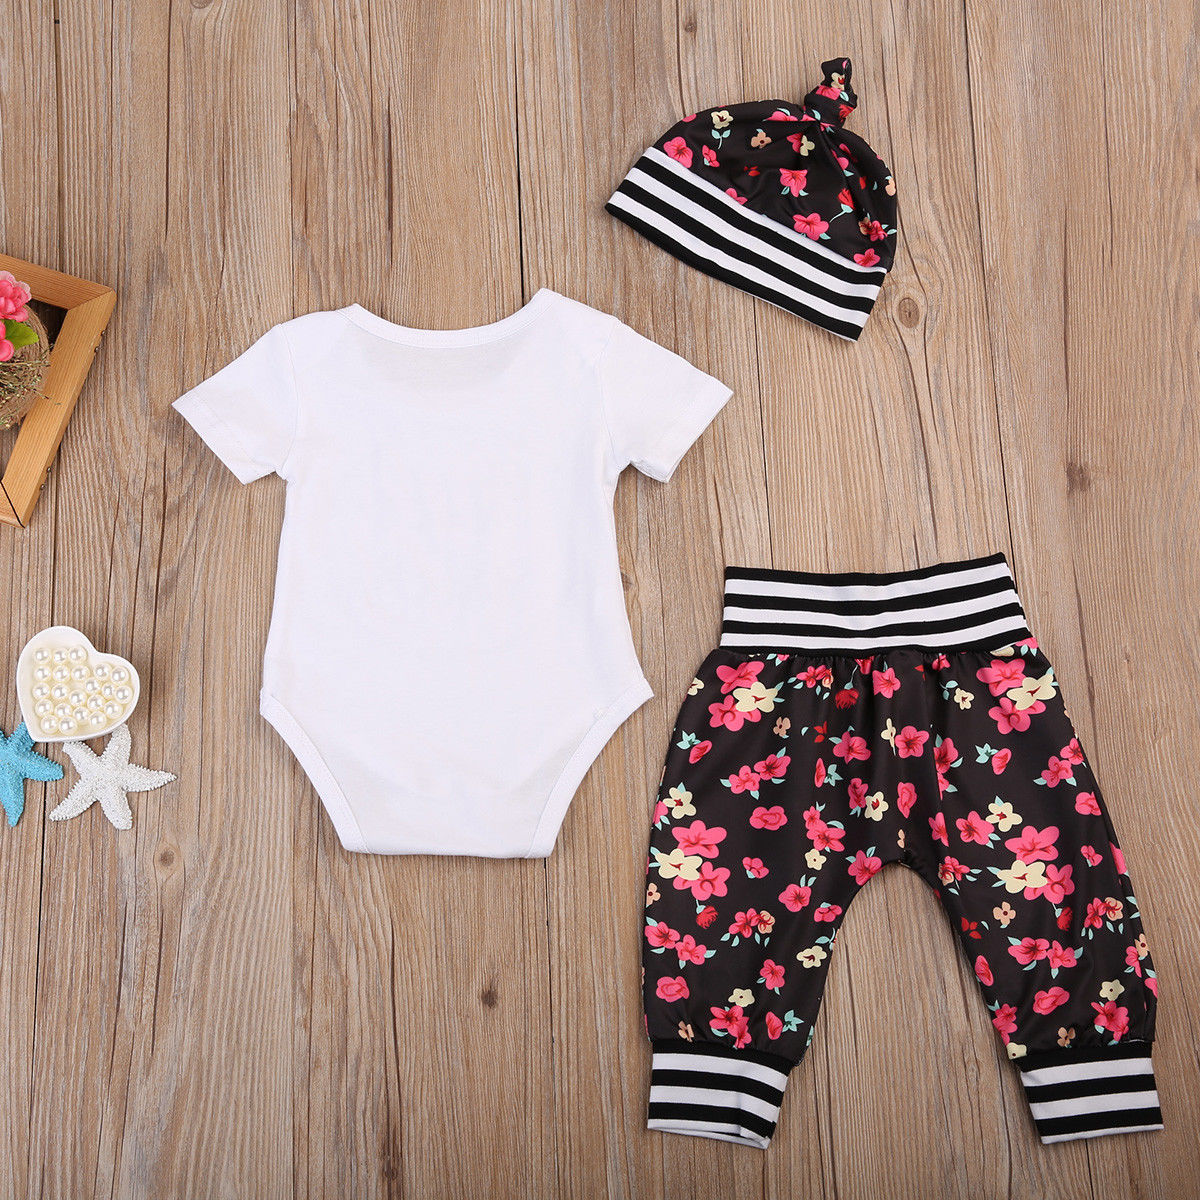 0-24M Infant Baby Girl Floral Outfit Bodysuit+ Pants Hat 3pcs Costume Set - ebowsos